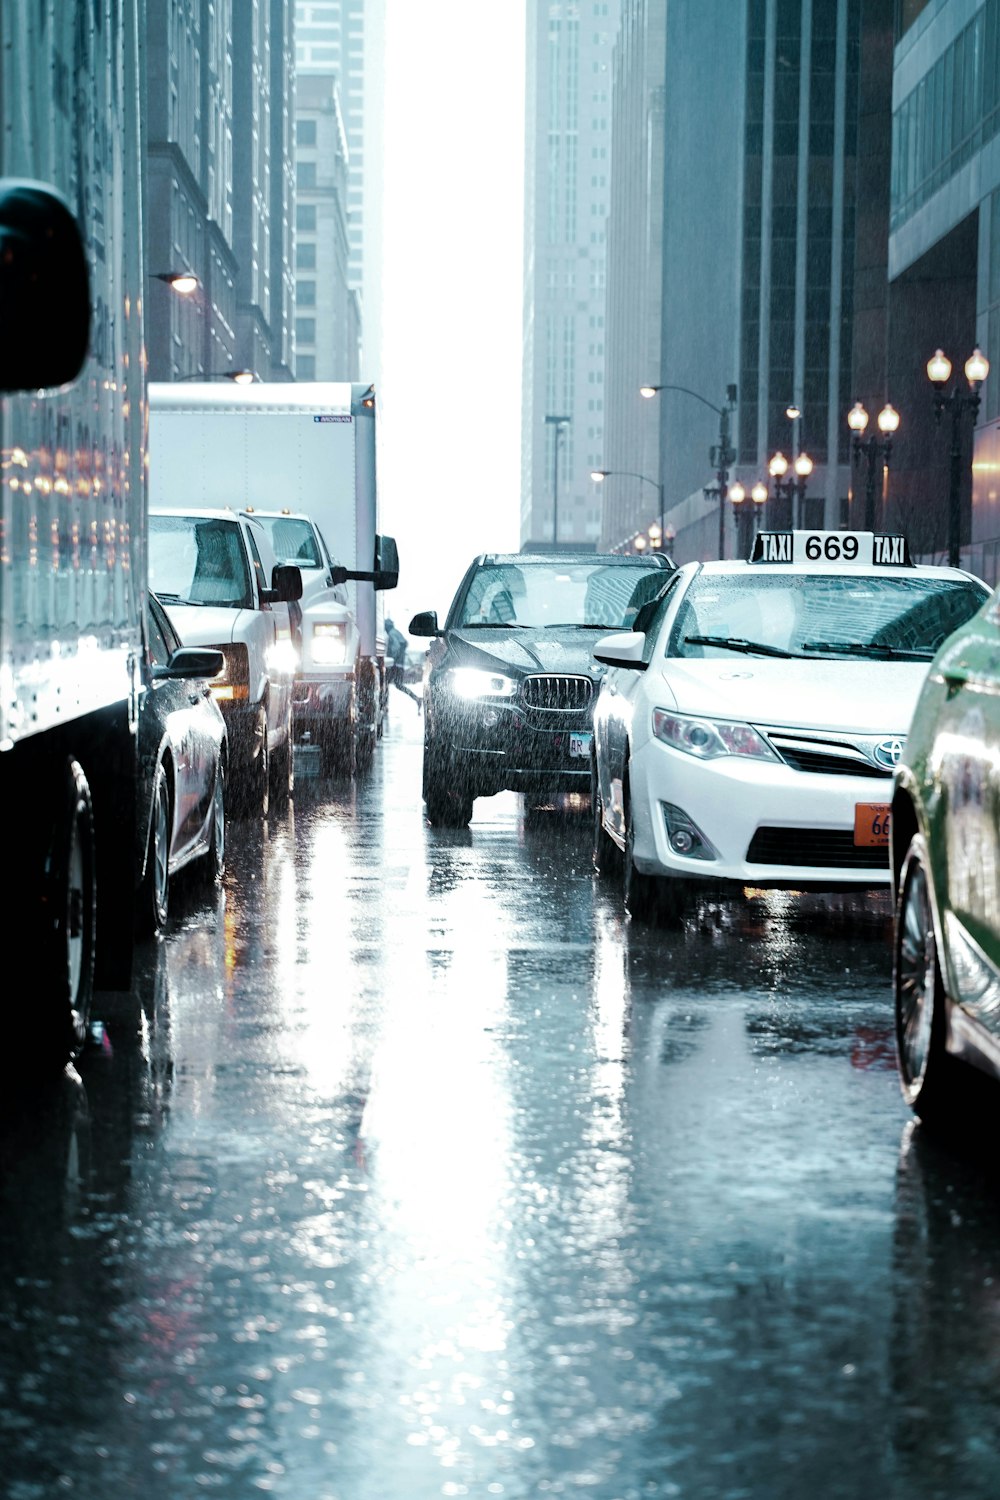 Veículo preso no trânsito durante dia chuvoso